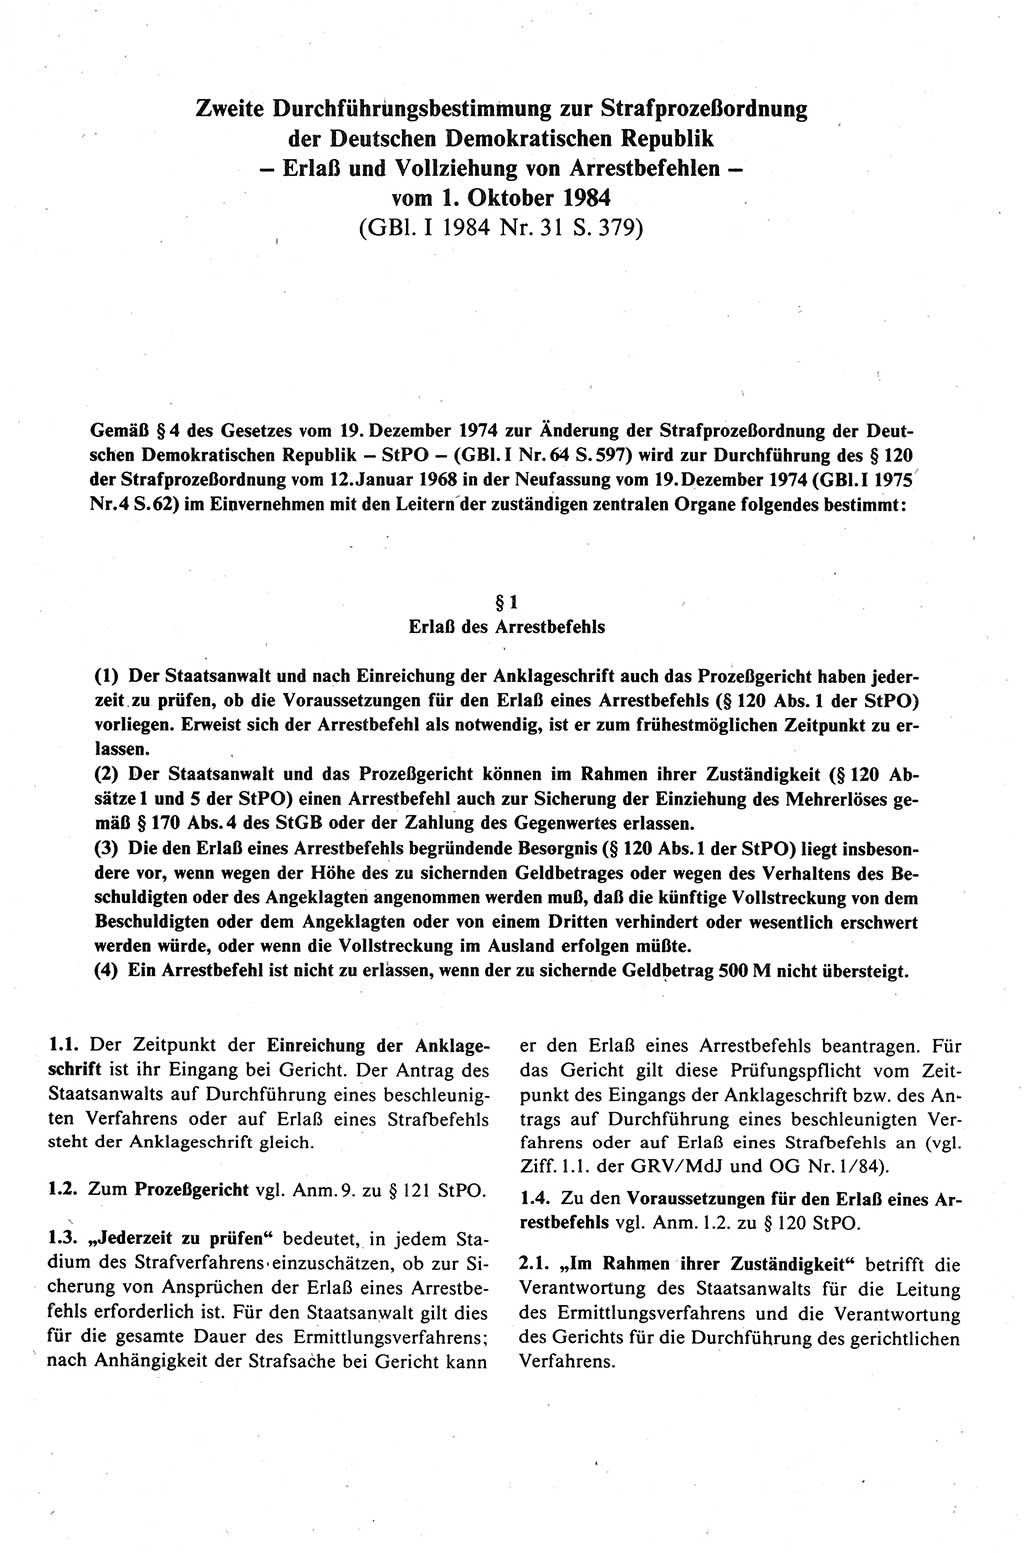 Strafprozeßrecht der DDR (Deutsche Demokratische Republik), Kommentar zur Strafprozeßordnung (StPO) 1989, Seite 483 (Strafprozeßr. DDR Komm. StPO 1989, S. 483)